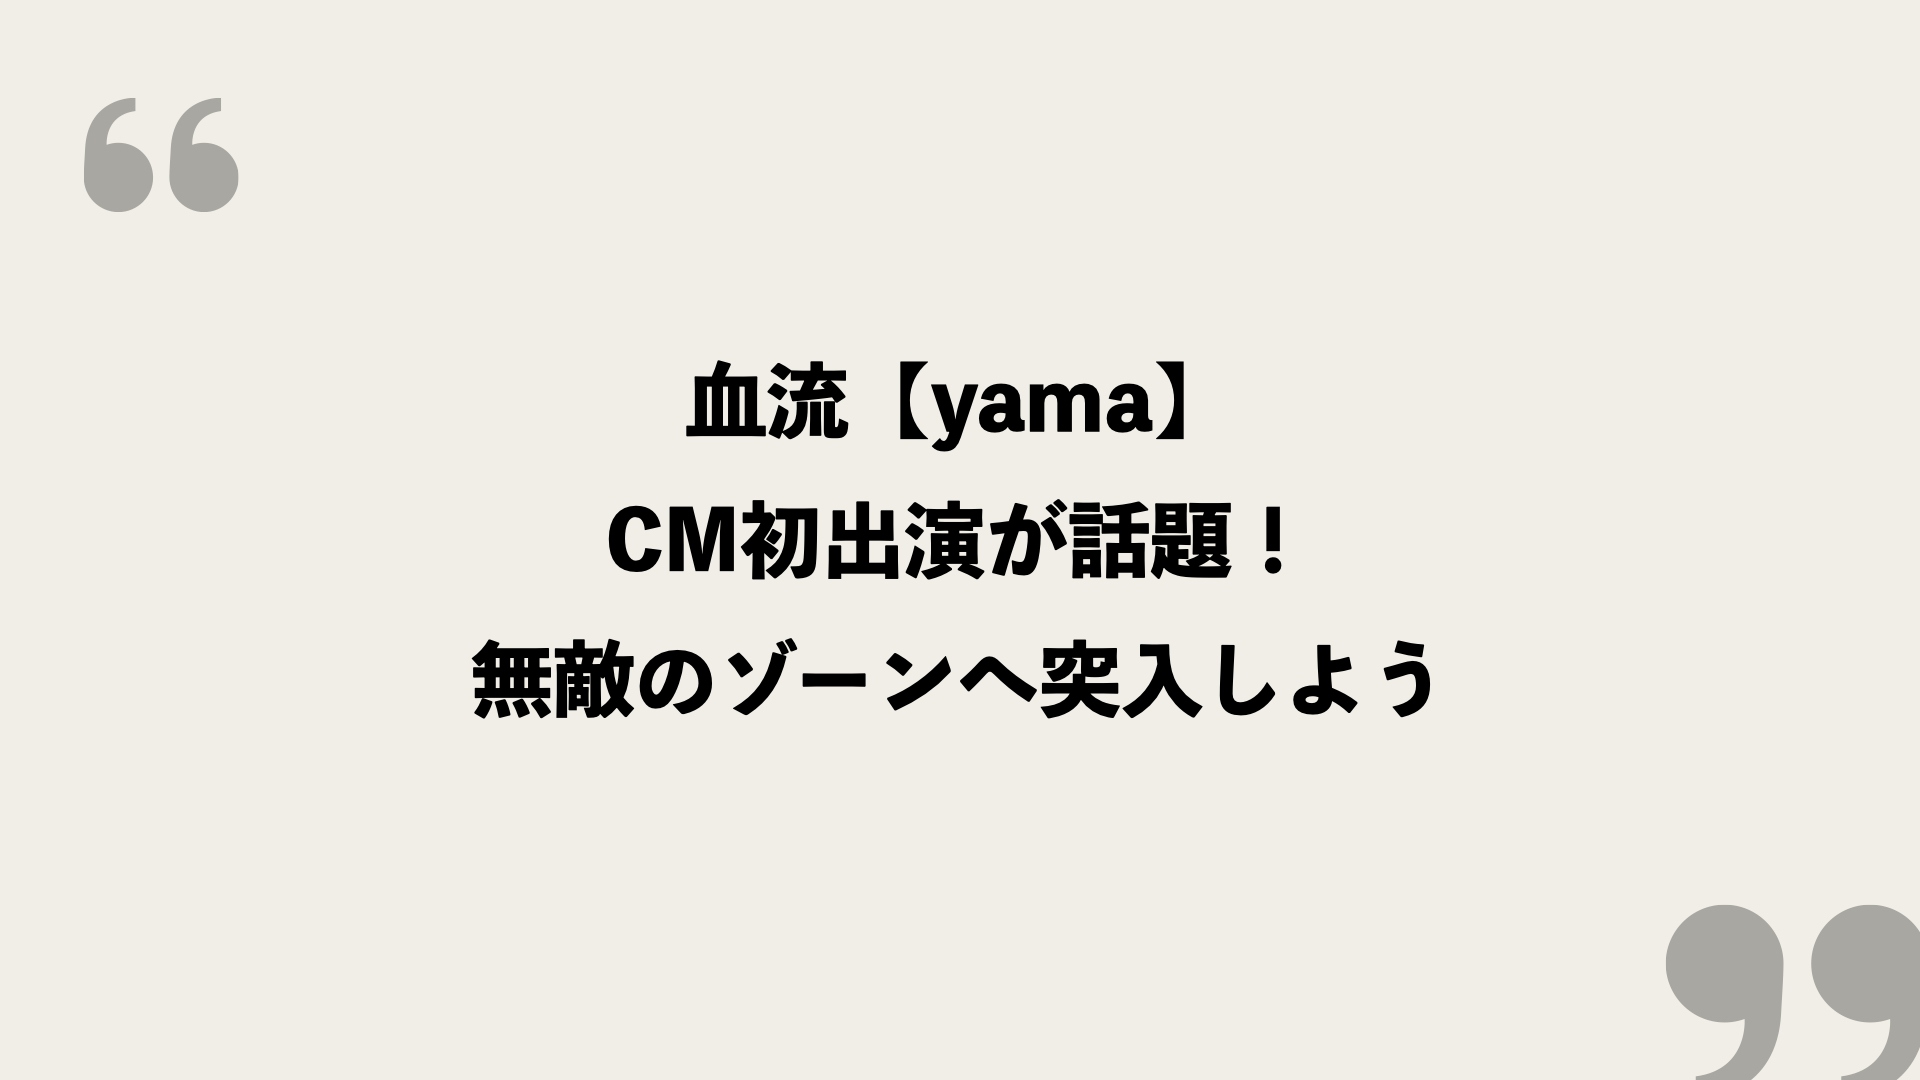 血流 Yama 歌詞の意味を考察 Cm初出演が話題 無敵のゾーンへ突入しよう Framu Media